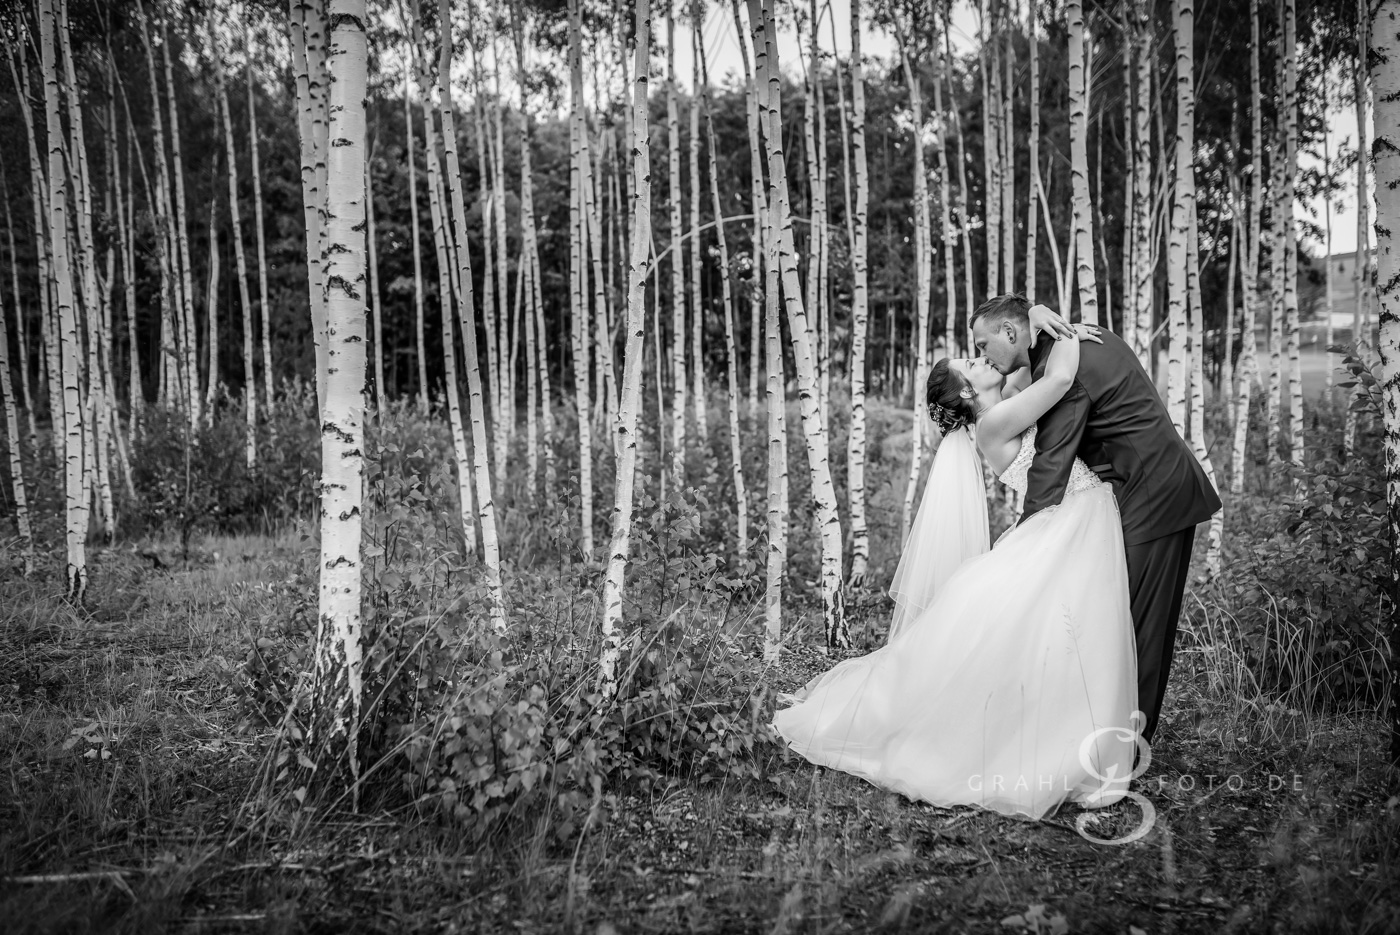 Grahlfoto Hochzeit Fotobeispiel in Schwarz-Weiß